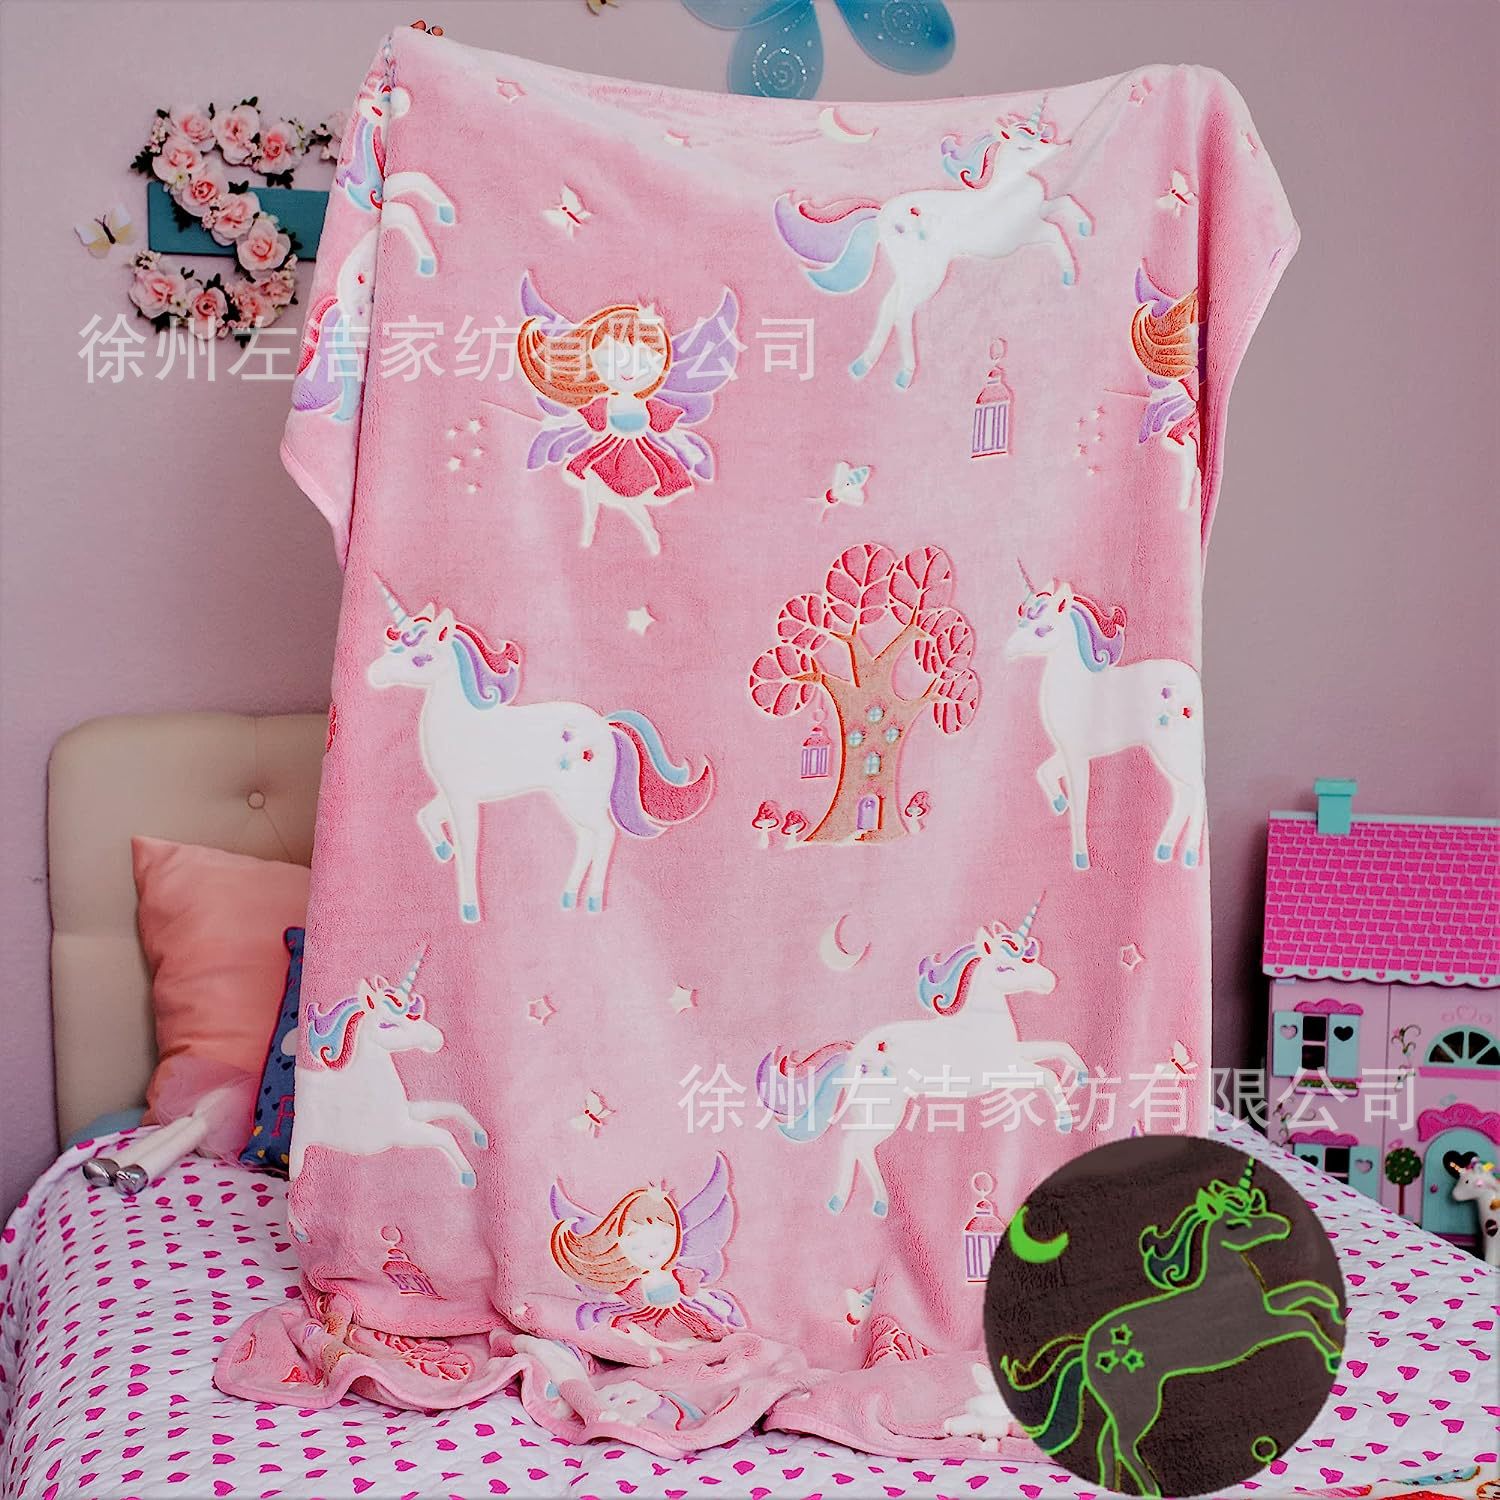 独角兽毛毯 柔软的粉色羊毛非常适合生日婴儿幼儿送给女孩的礼物!